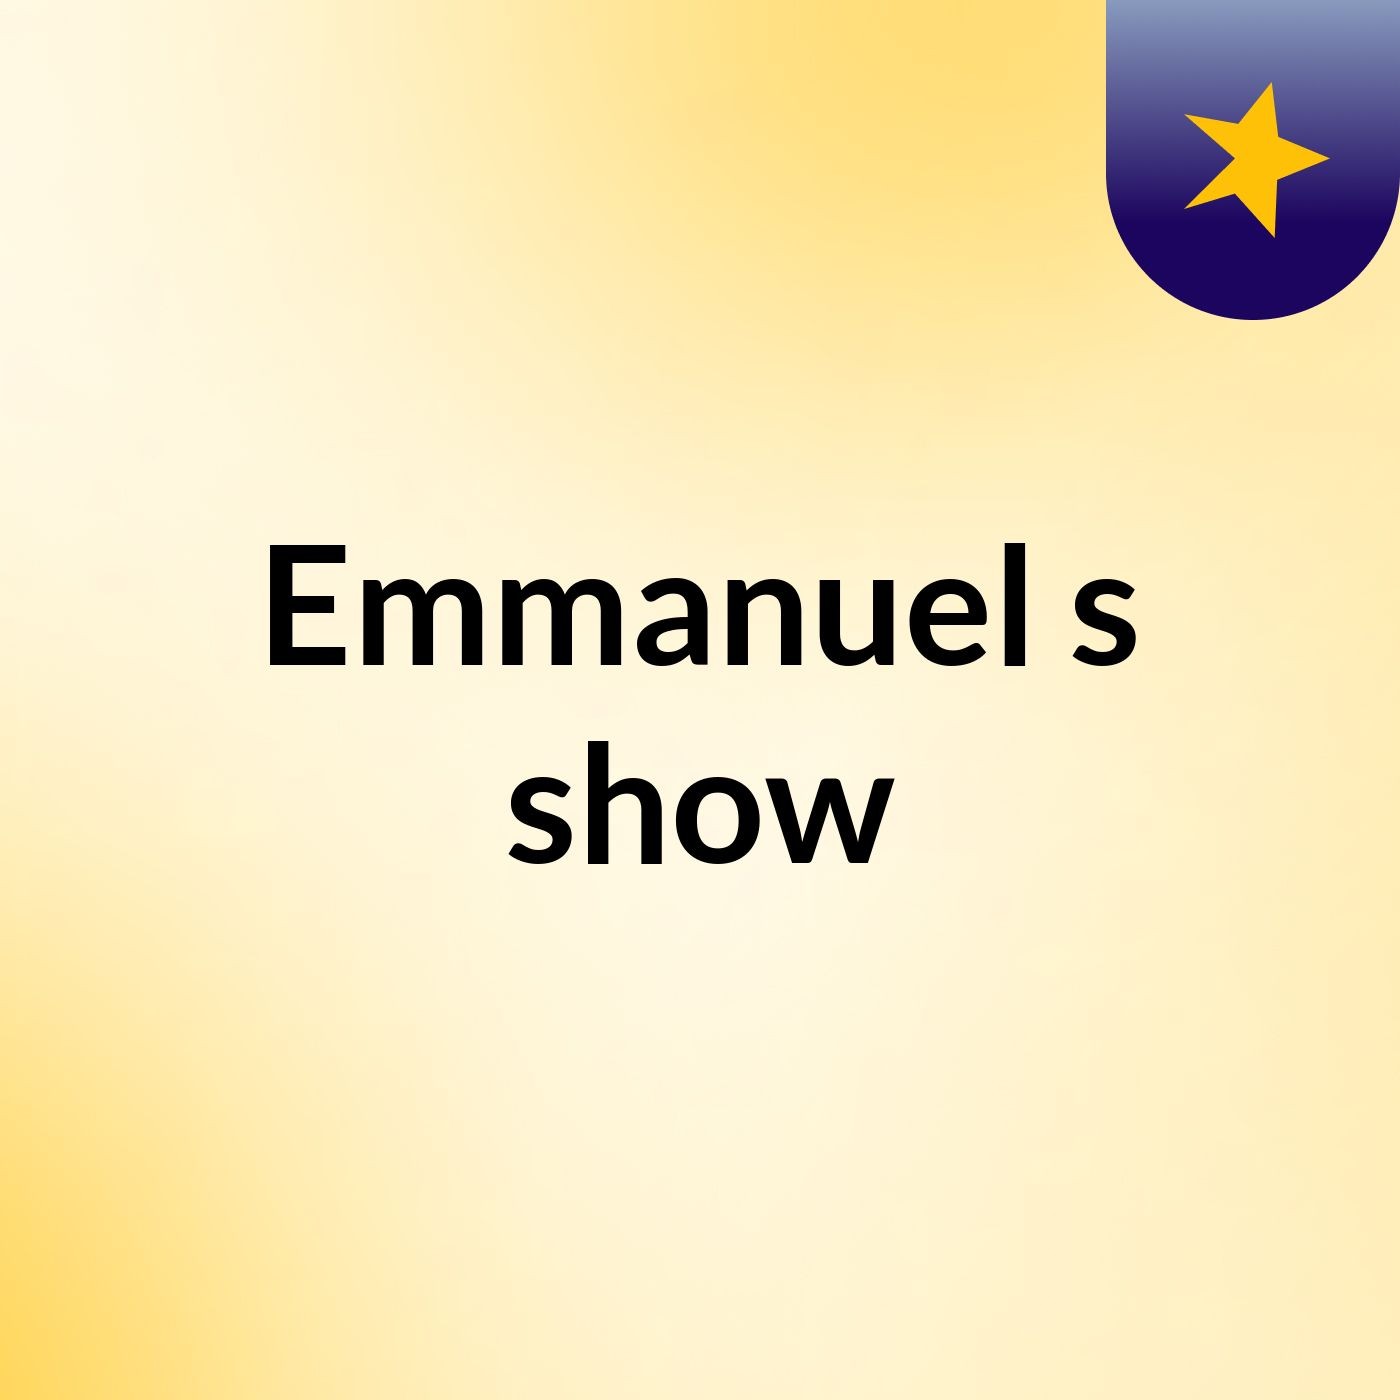 Emmanuel's show